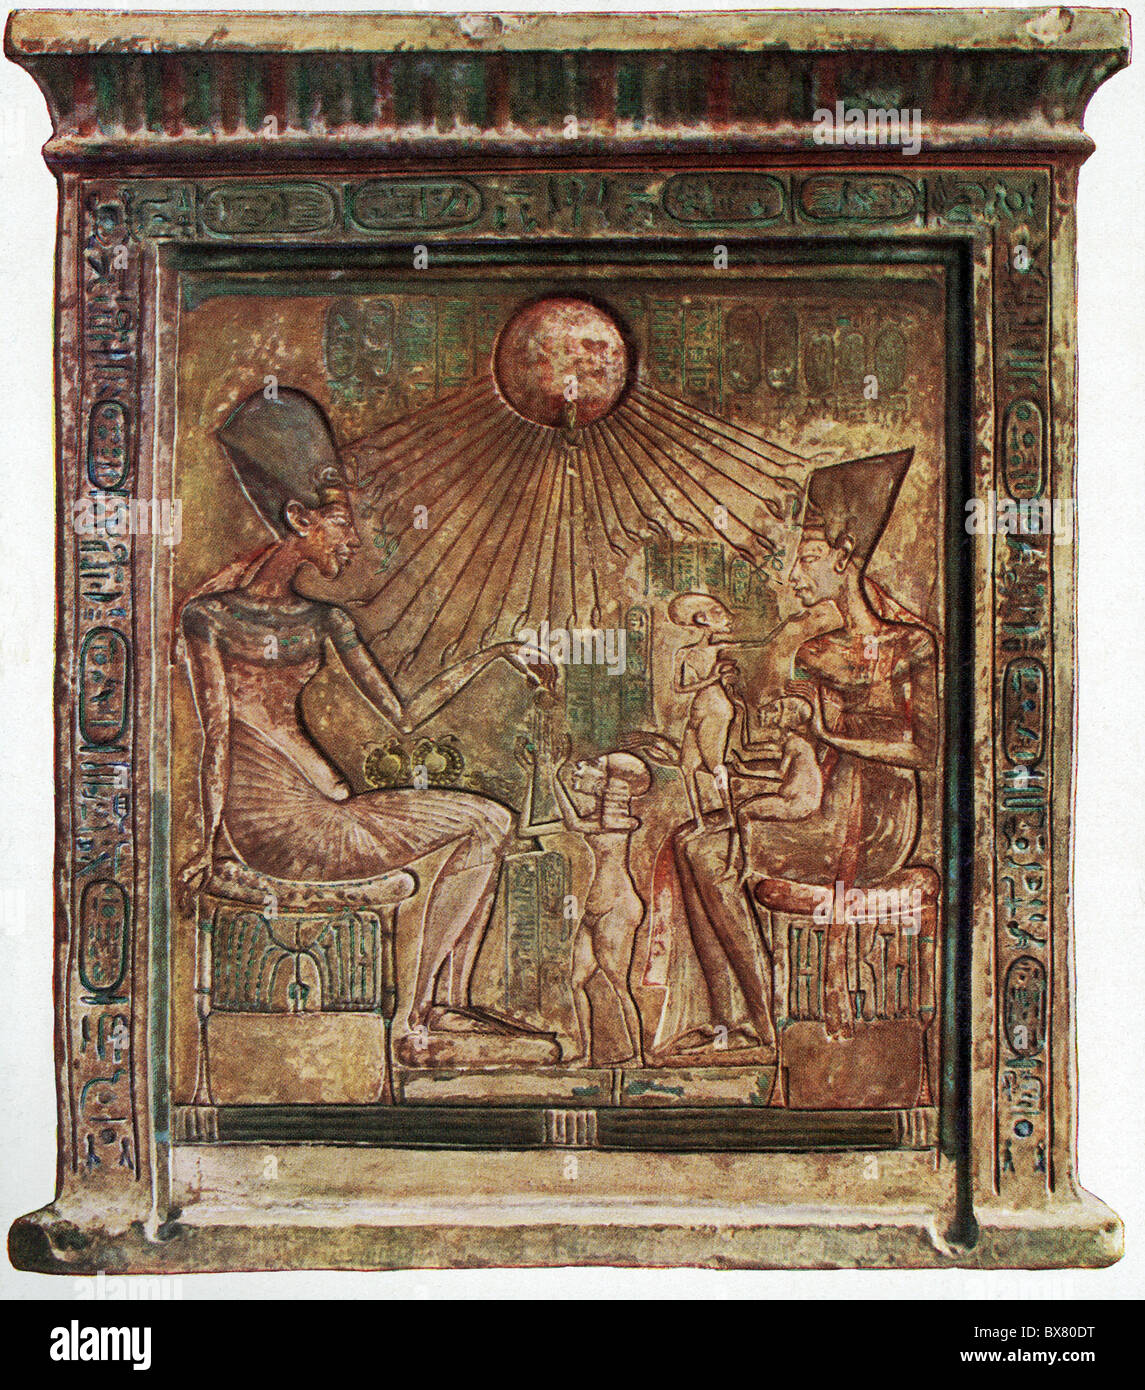 Cette peinture murale montre Akhenaton, la xviiie dynastie (Nouvel Empire) pharaon égyptien, et sa famille adorant Aton. Banque D'Images